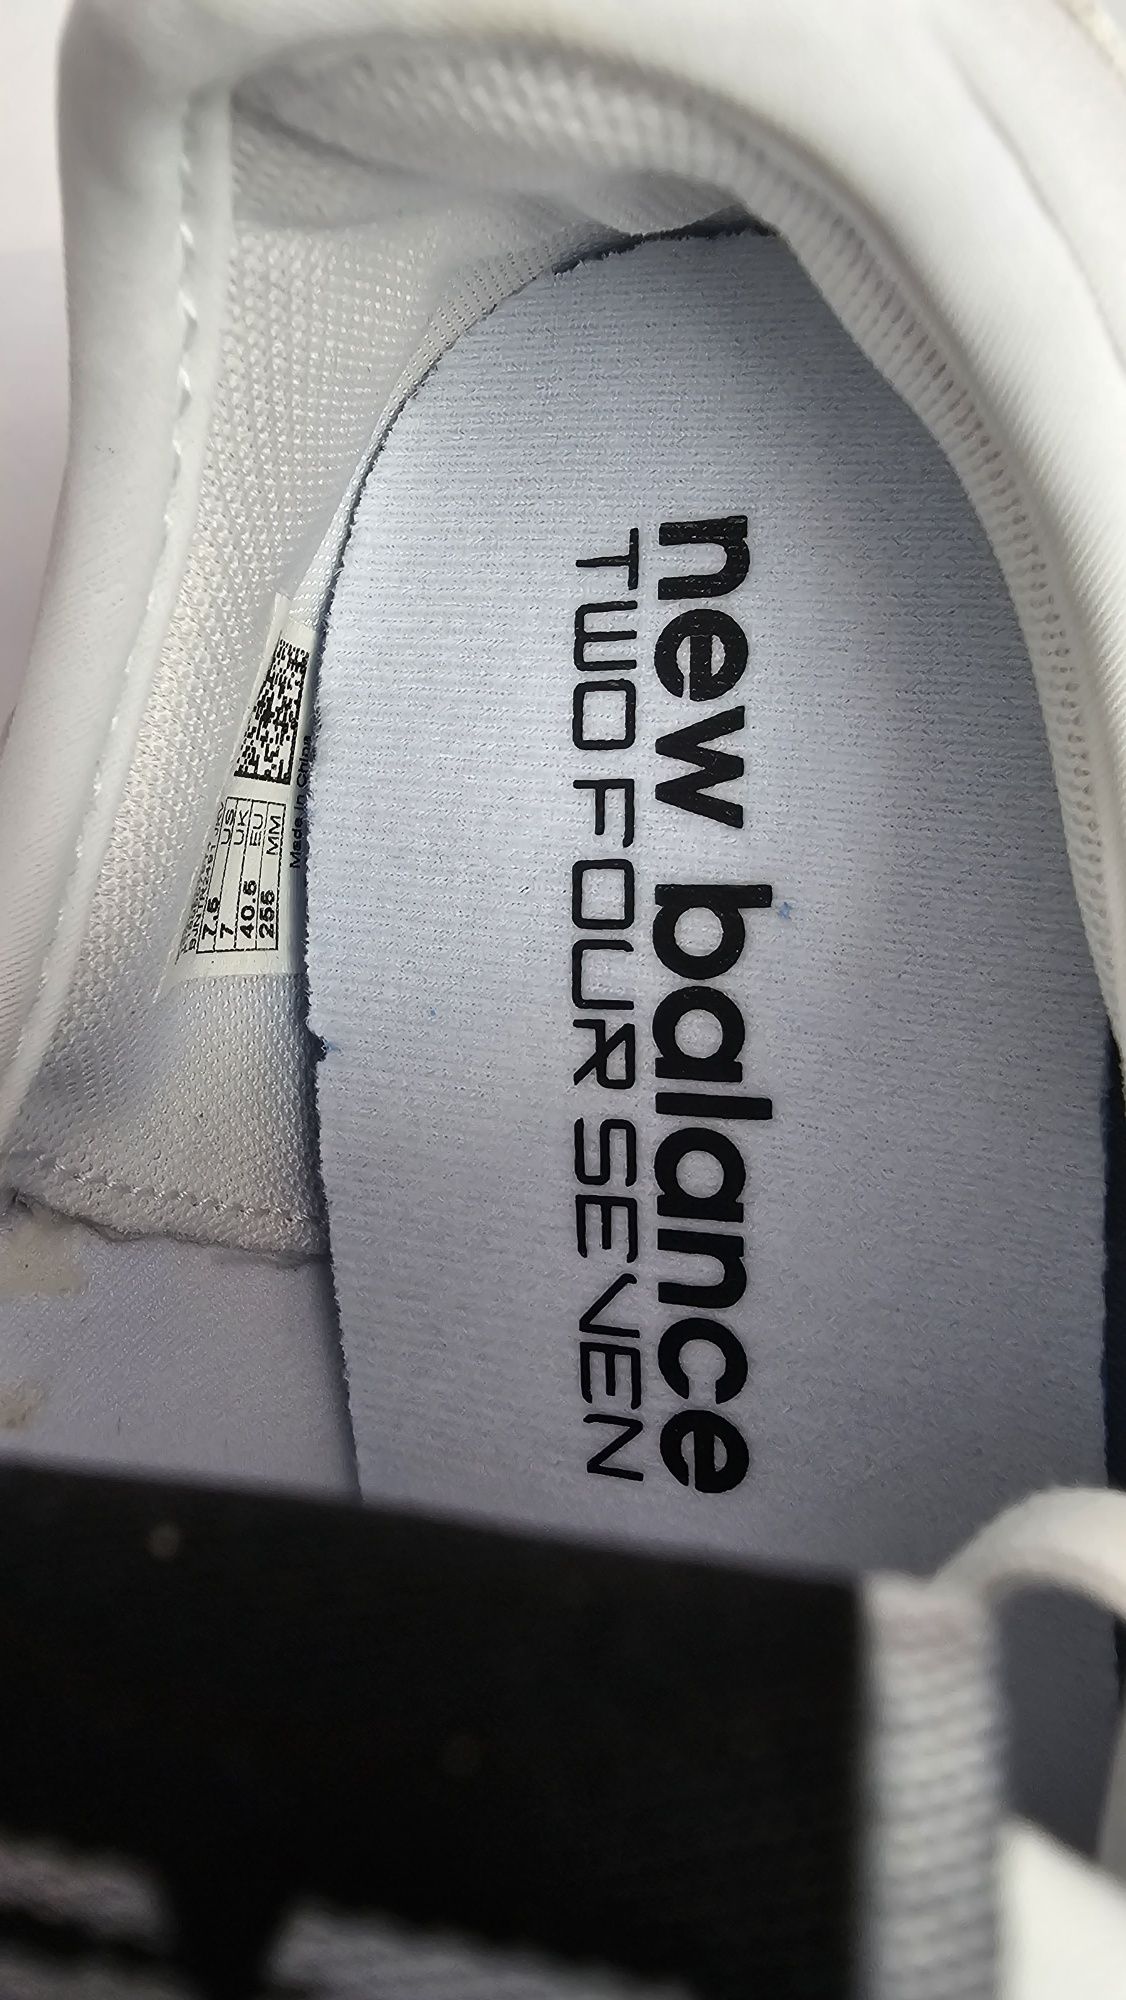 Buty nowe sportowe New Balance Unisex modny kolor biały rozmiar 40.5